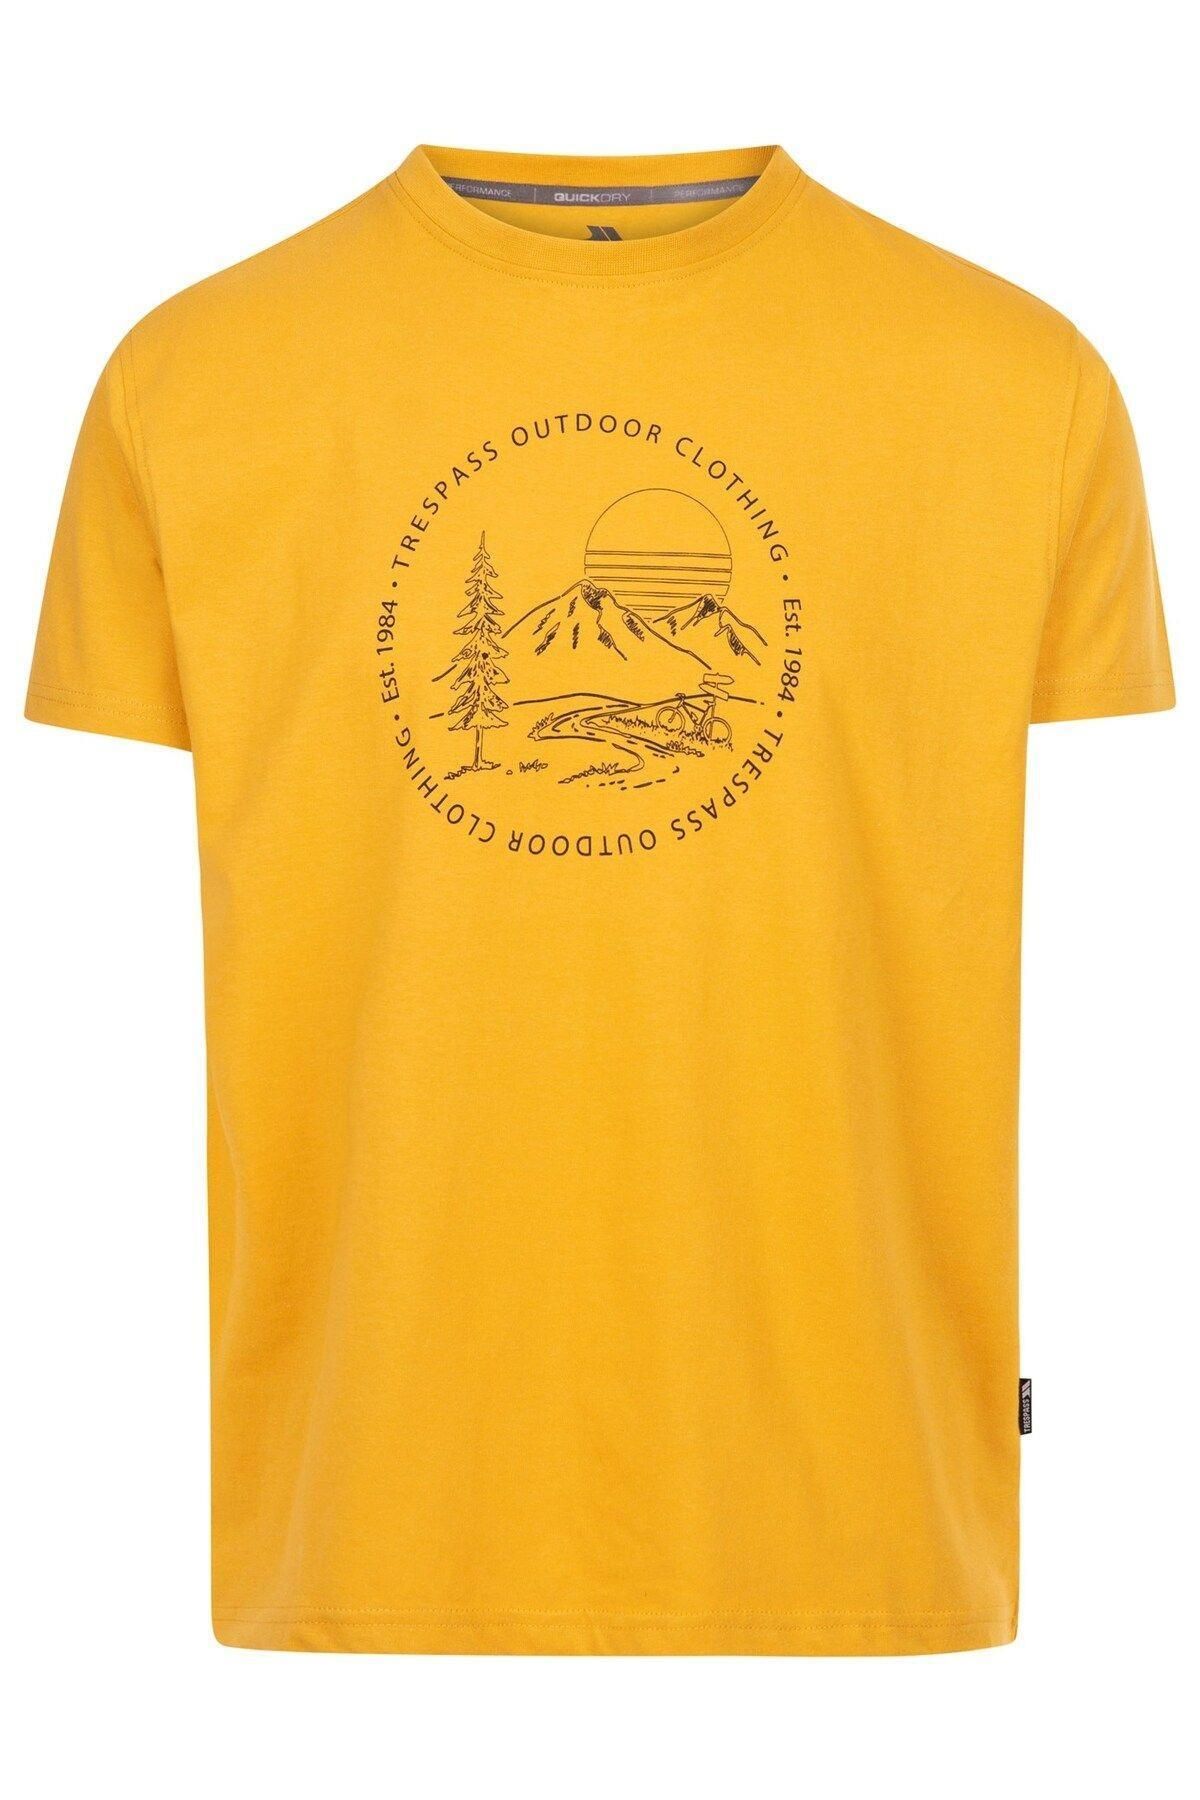 trespass Glentress - Male Casual Printed T-Shirt Erkek T-shirt